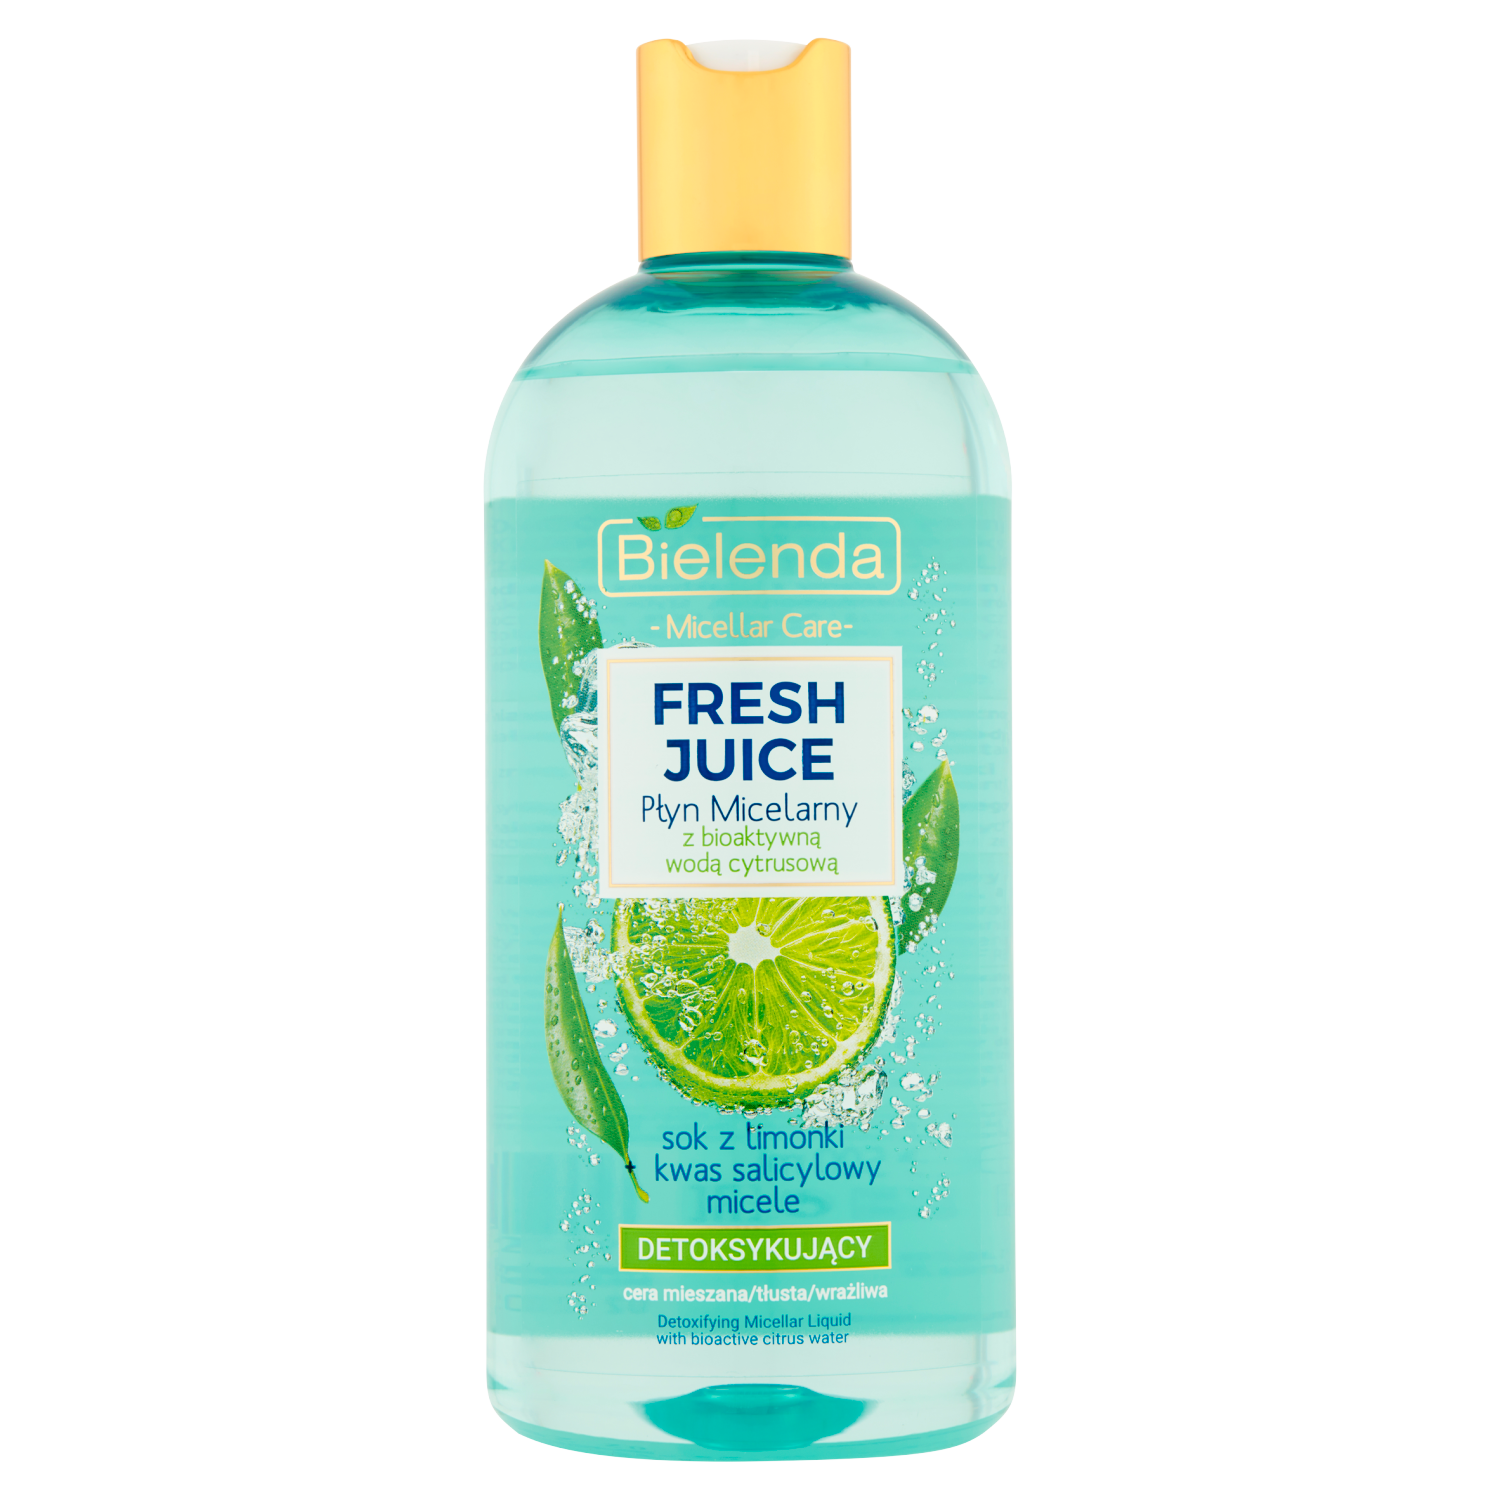 Bielenda Fresh Juice детоксифицирующая мицеллярная вода с биоактивной цитрусовой водой, 500 мл